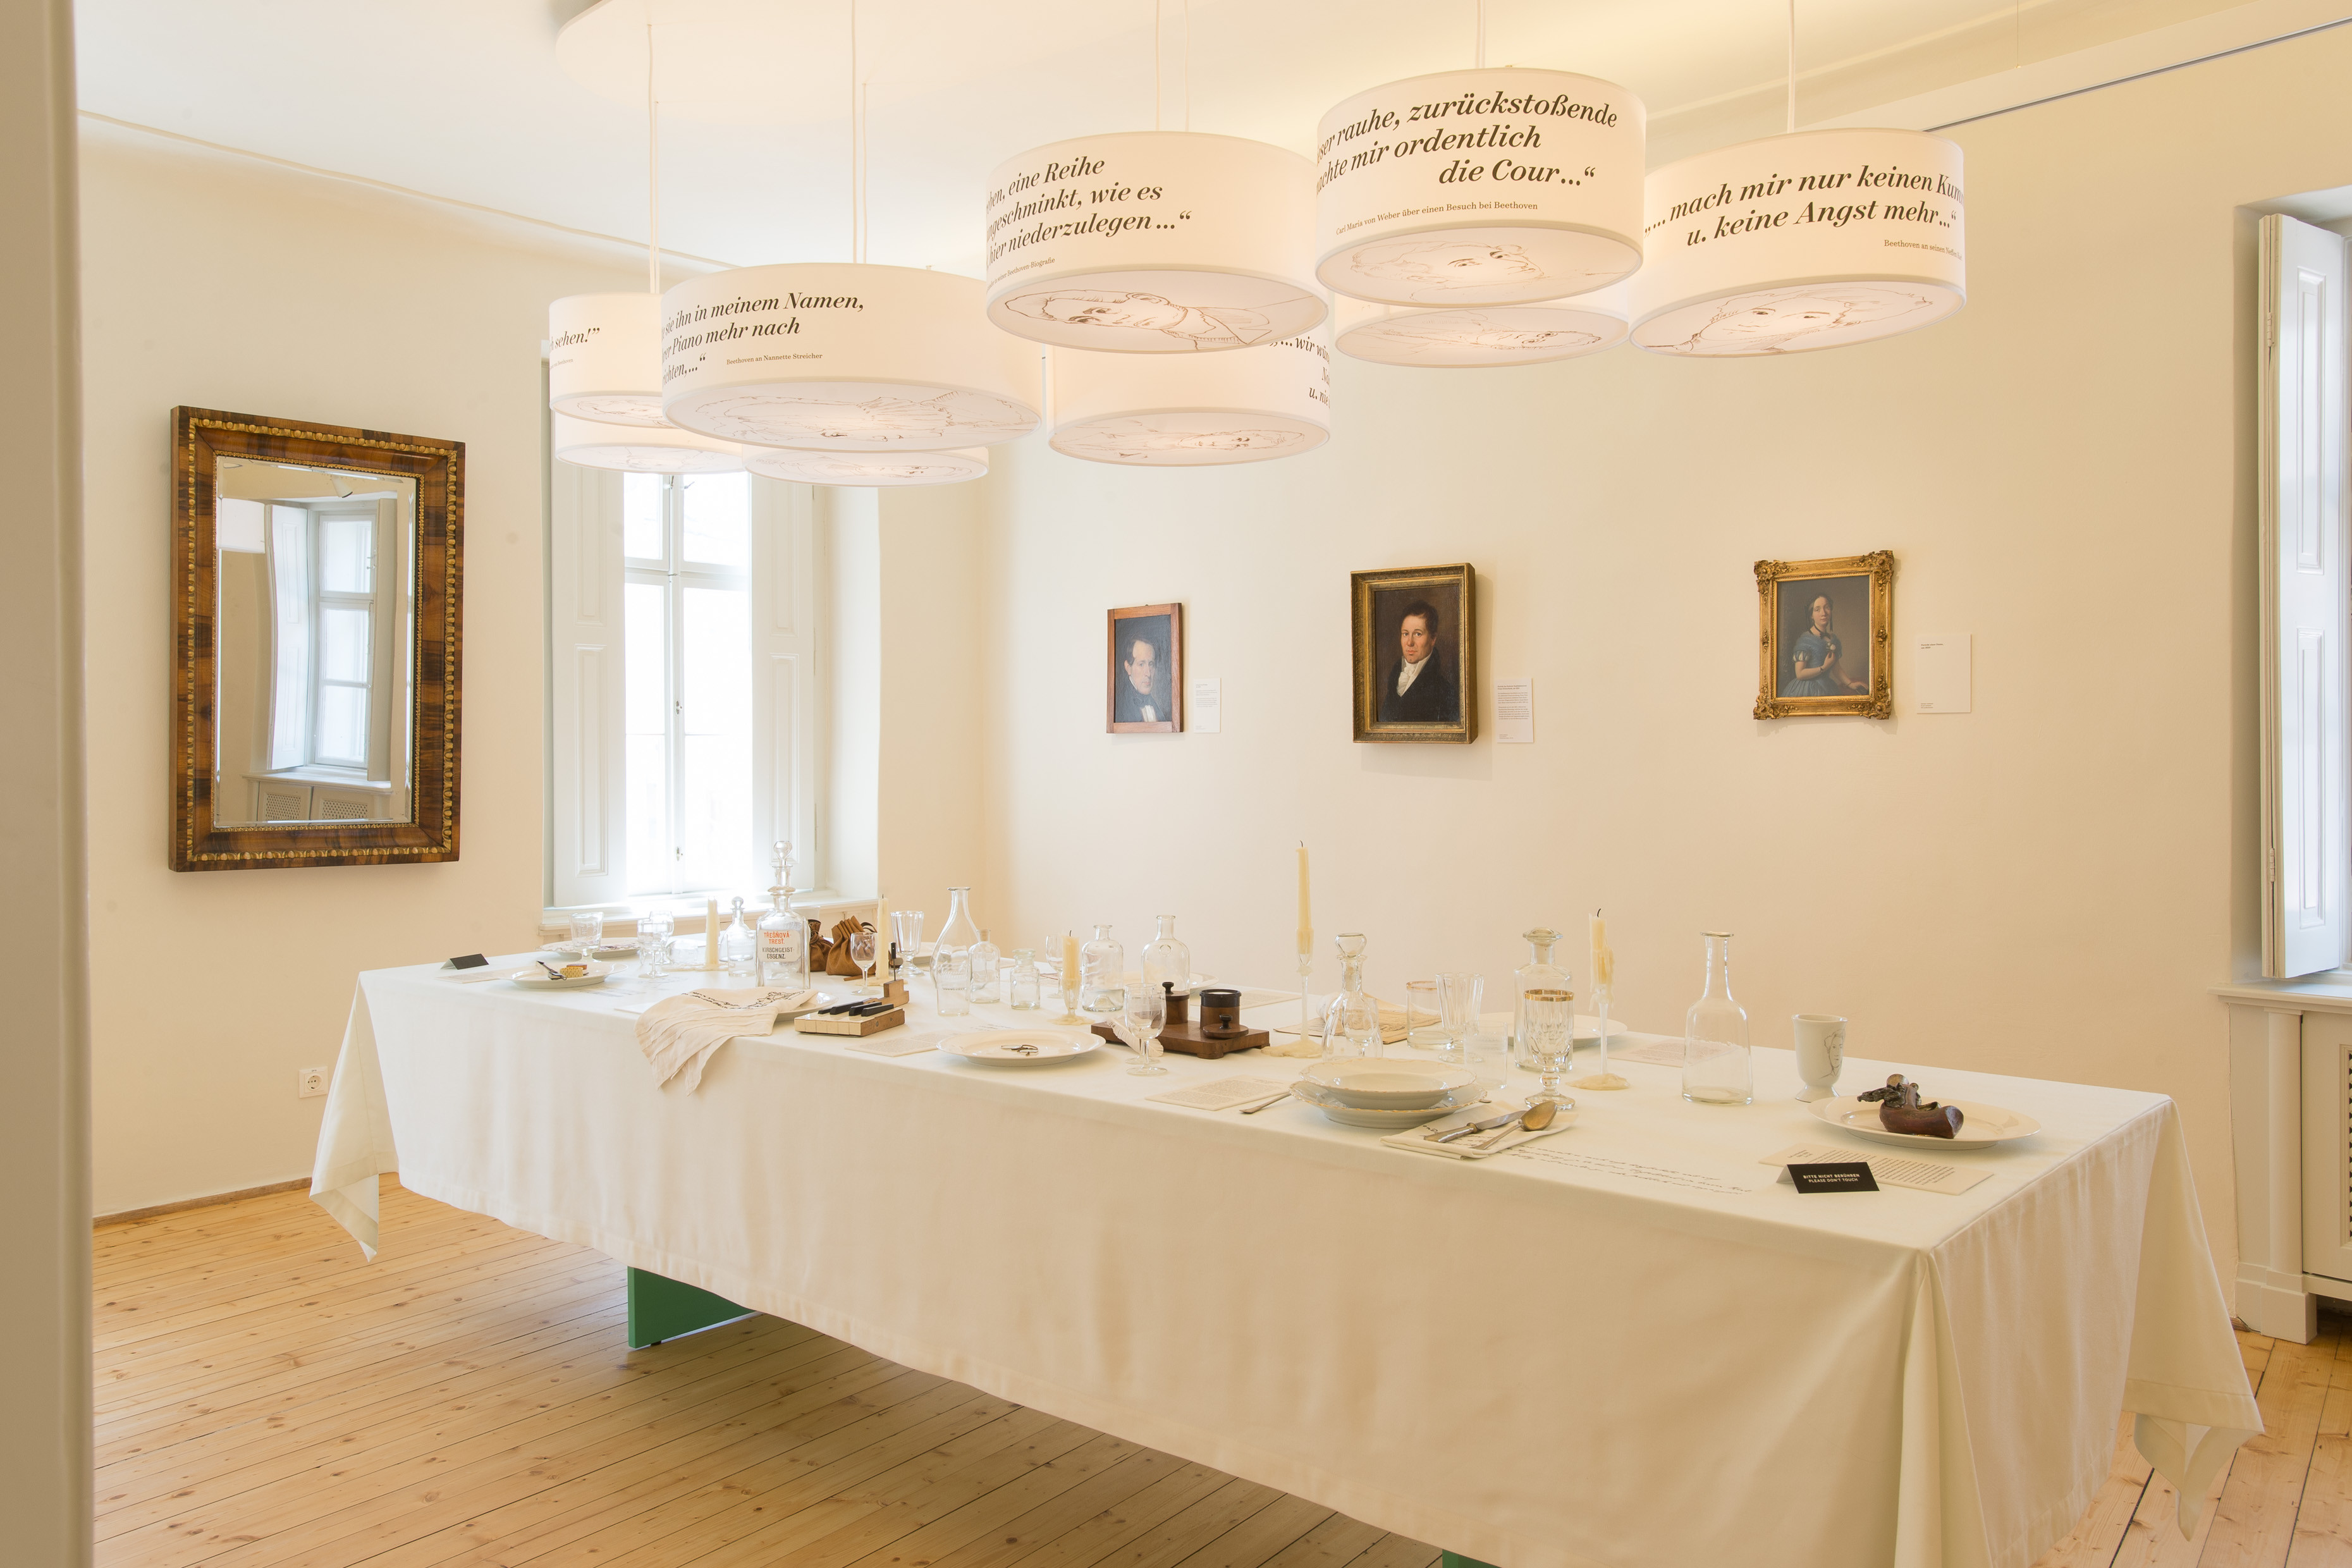 Modernes Ausstellungskonzept - Beethovens Gäste